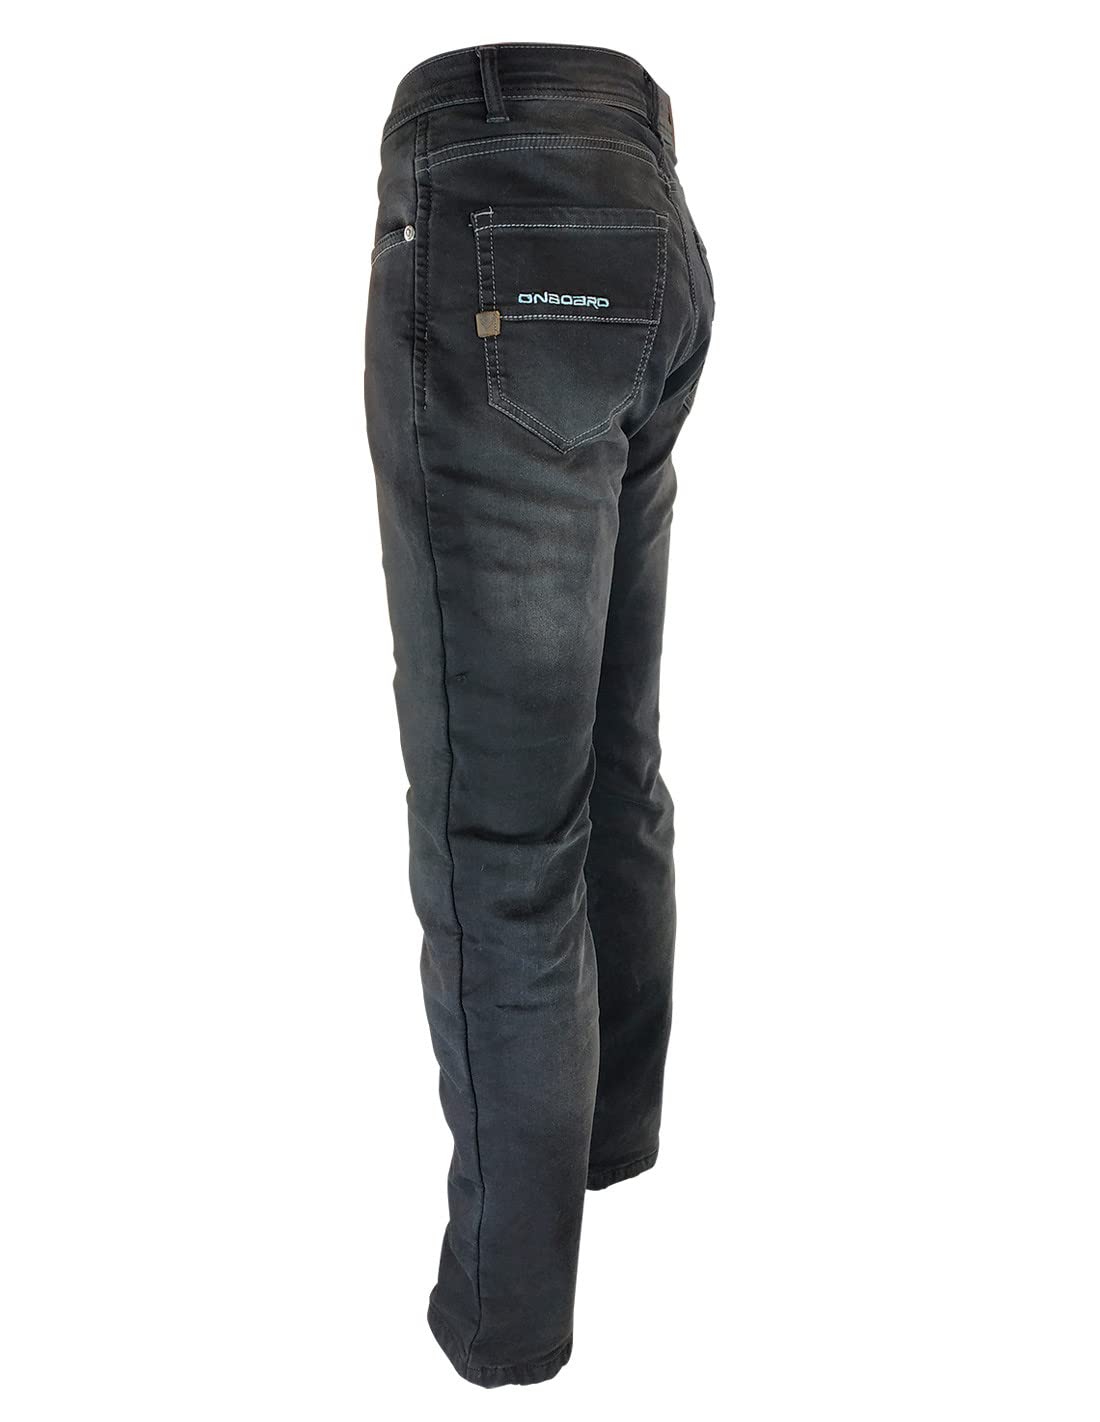 ON BOARD Concept Jeanshose mit Protektoren, Herren, 34, dunkelblau von ON BOARD